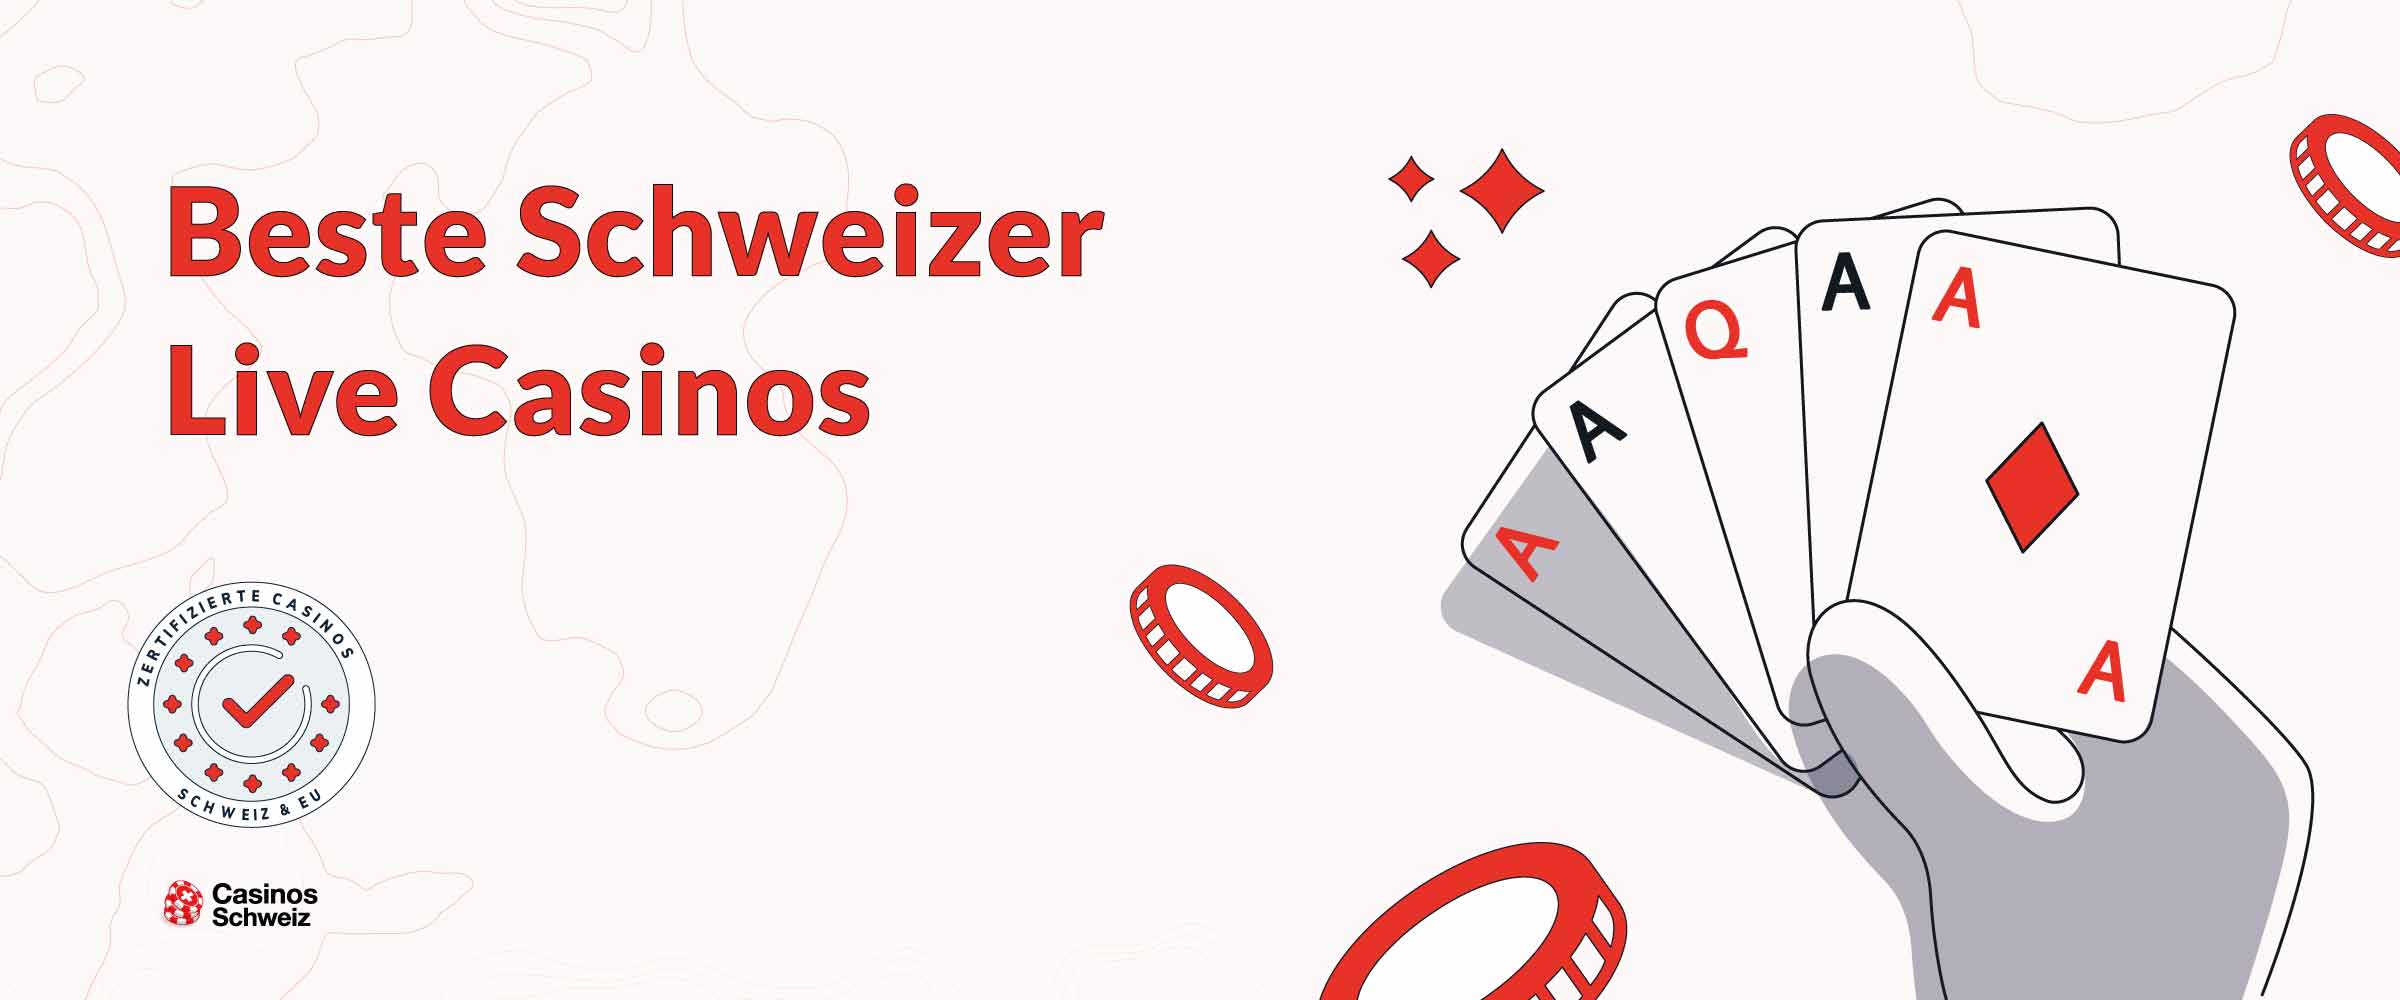 Beste Schweizer Live Casinos